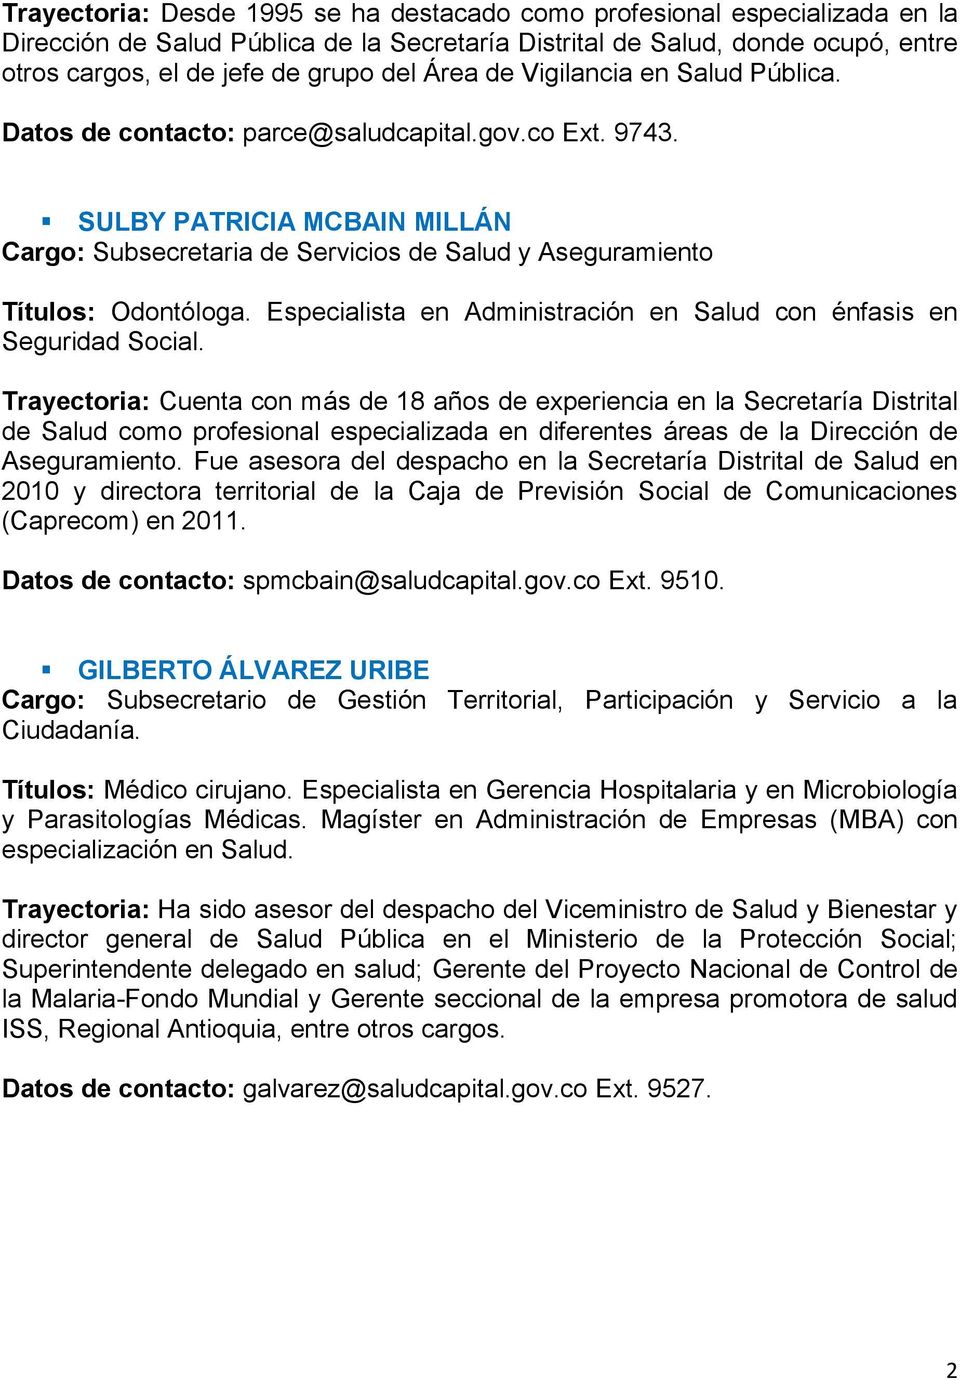 SULBY PATRICIA MCBAIN MILLÁN Cargo: Subsecretaria de Servicios de Salud y Aseguramiento Títulos: Odontóloga. Especialista en Administración en Salud con énfasis en Seguridad Social.